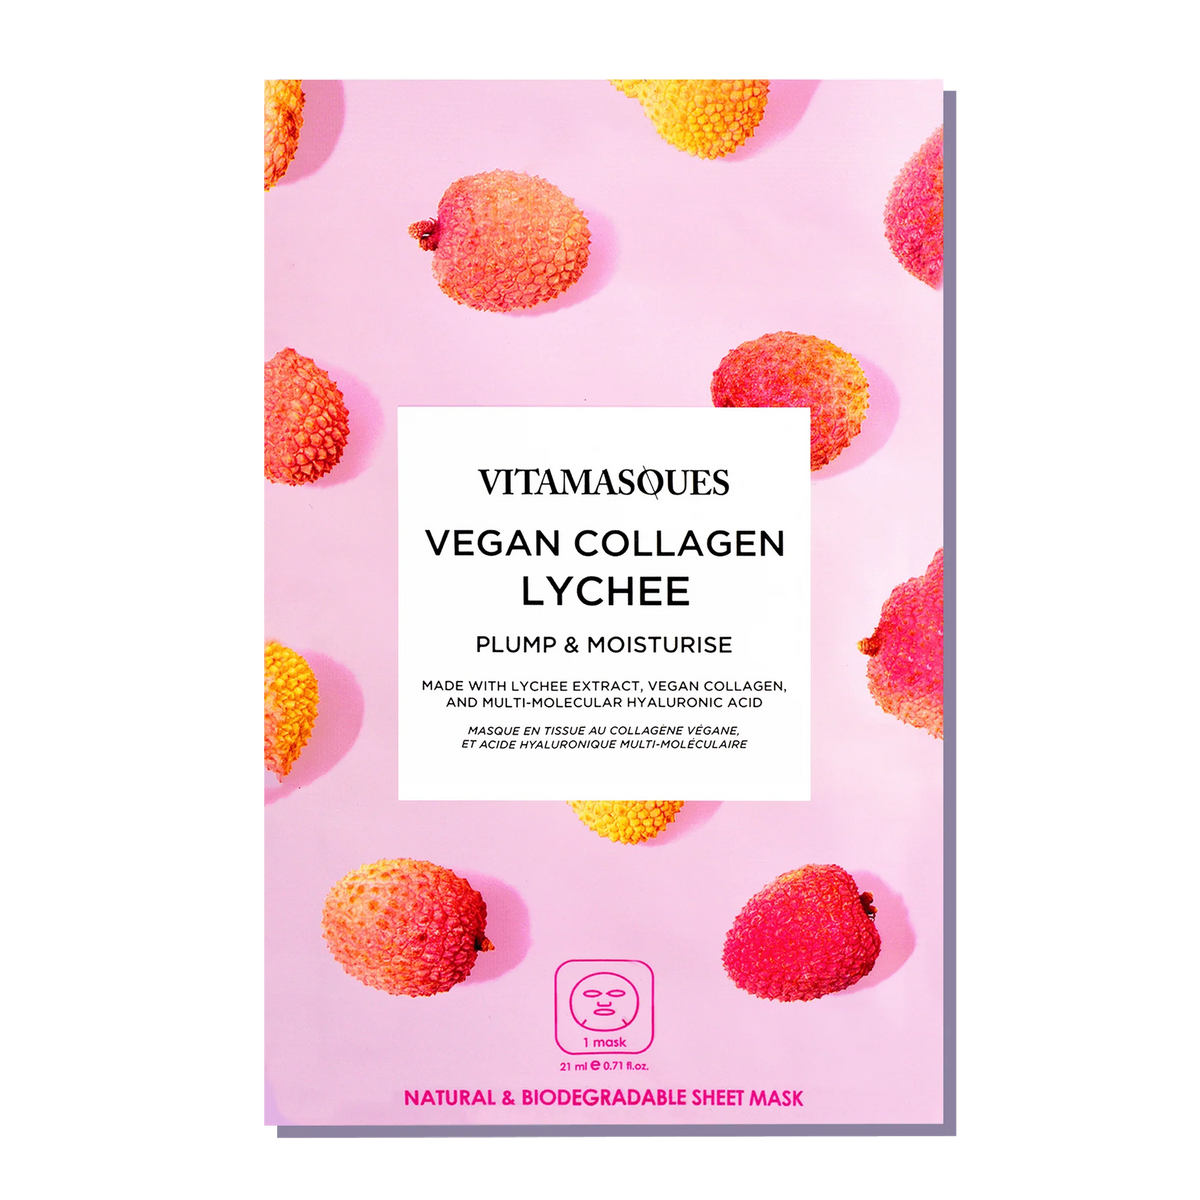 Vegan Collagen Lychee Face Sheet Mask